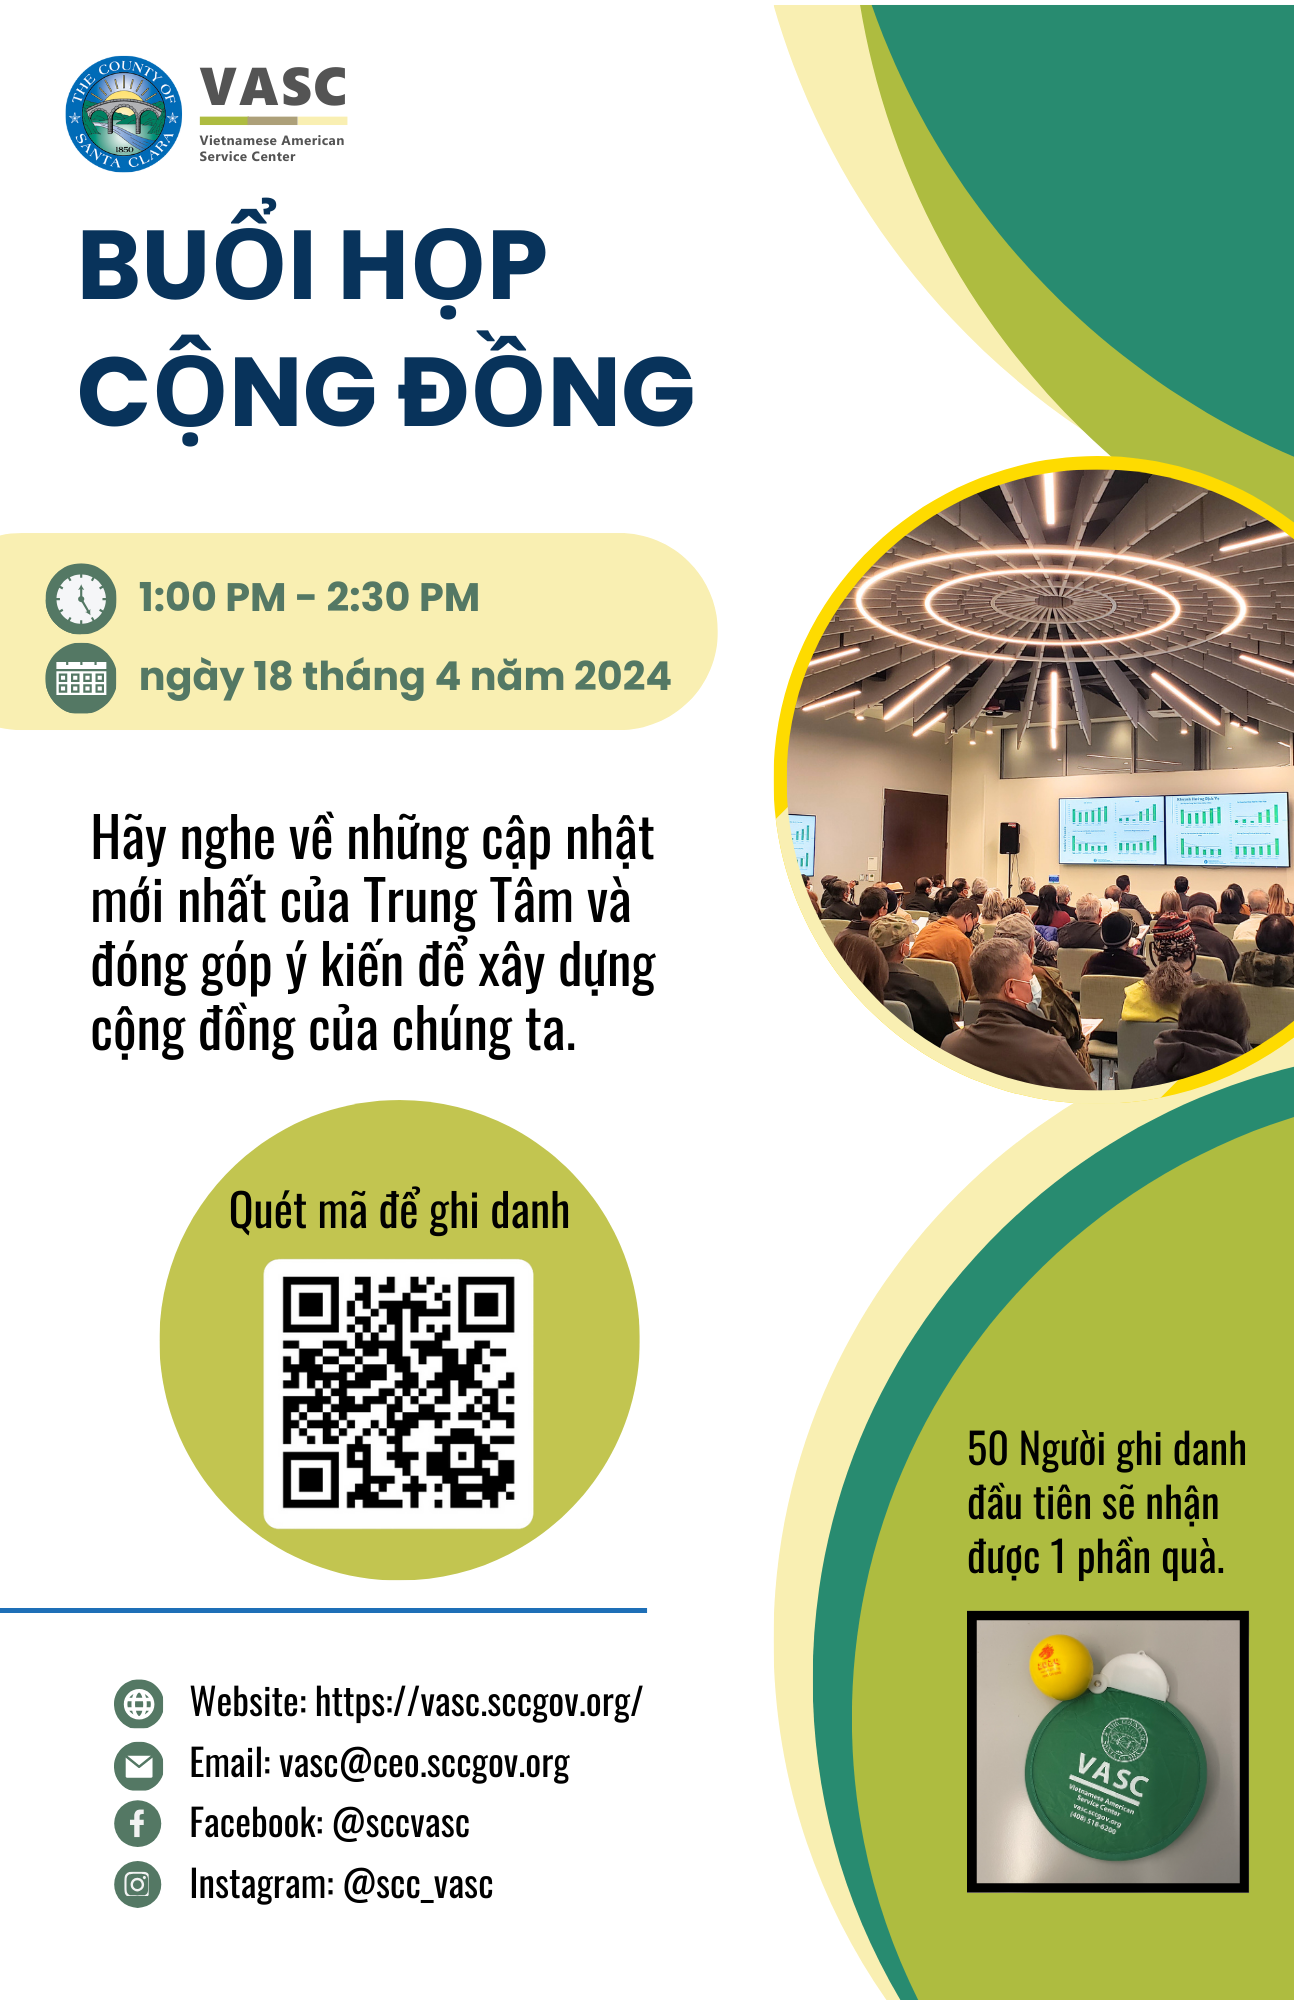 Community stakeholder meeting flyer in Vietnamese